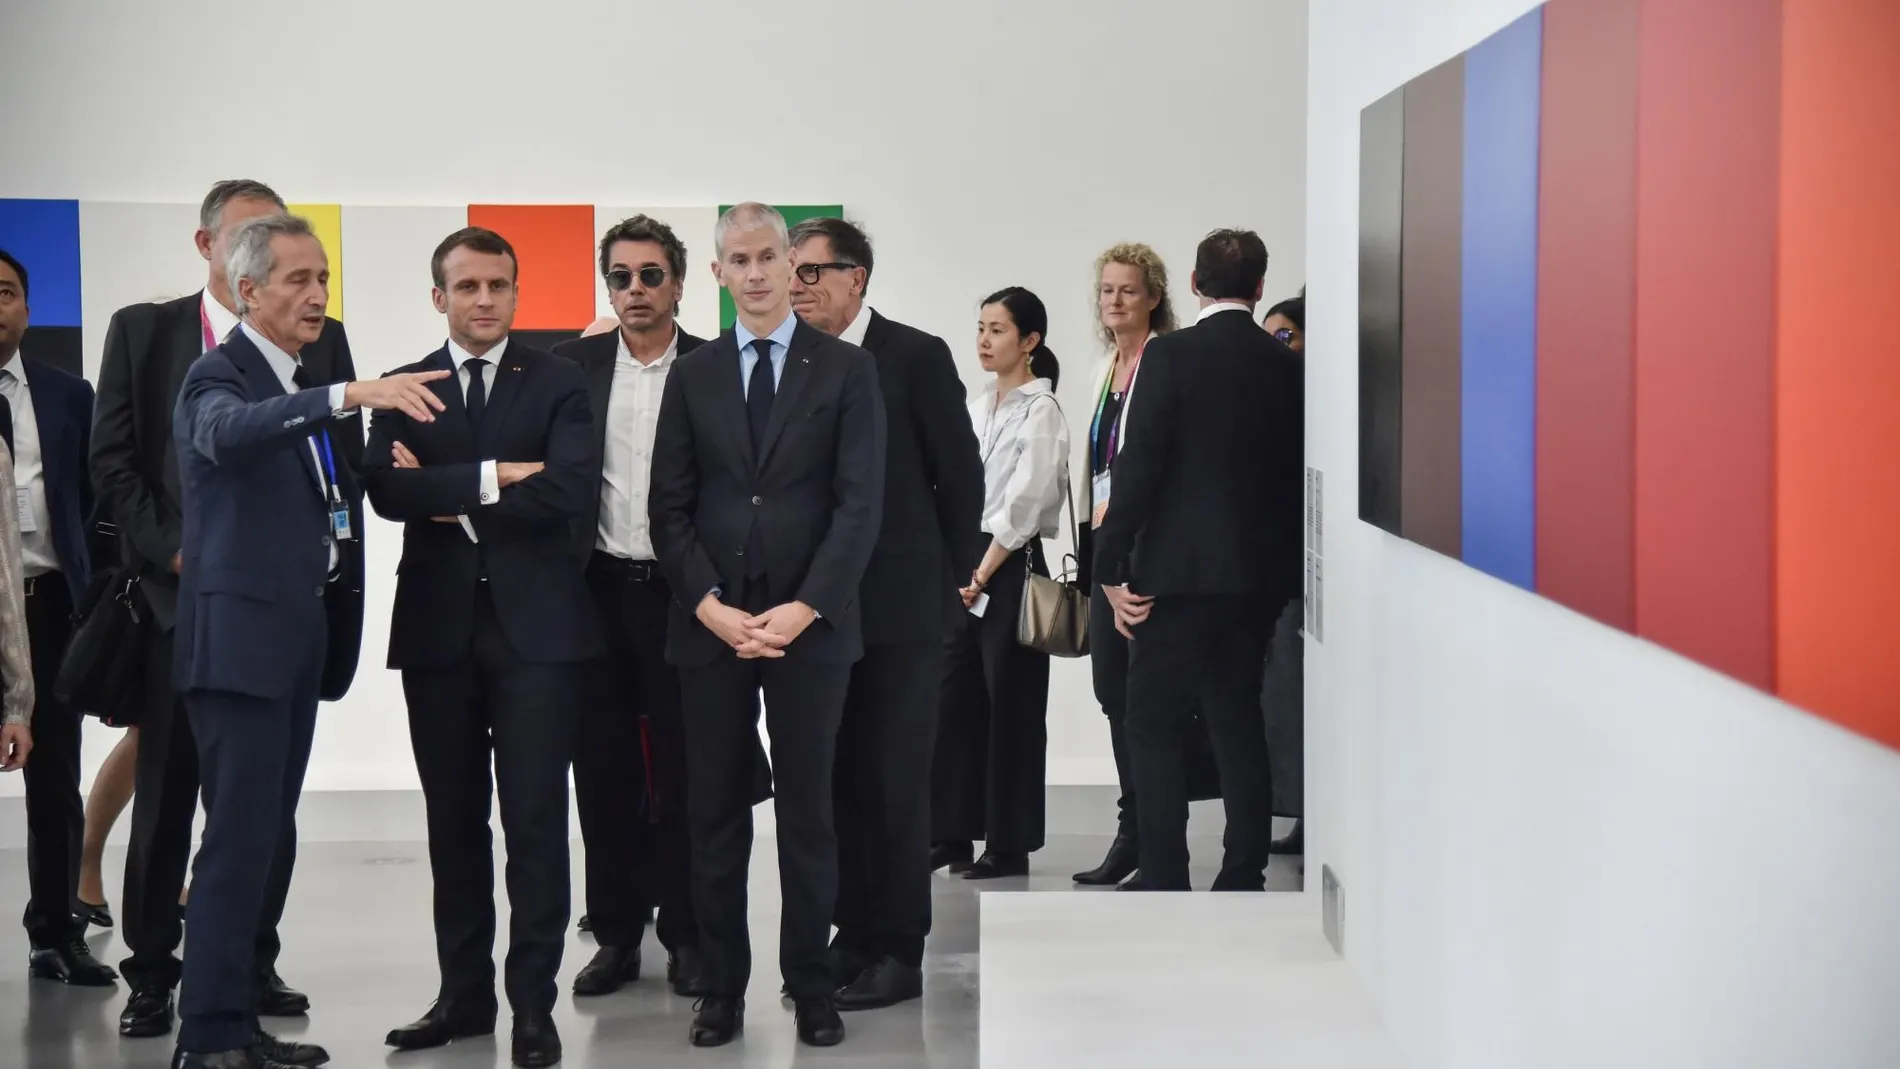 Emmanuel Macron durante la inauguración del Centro Pompidou West Bund Museum en Shanghai